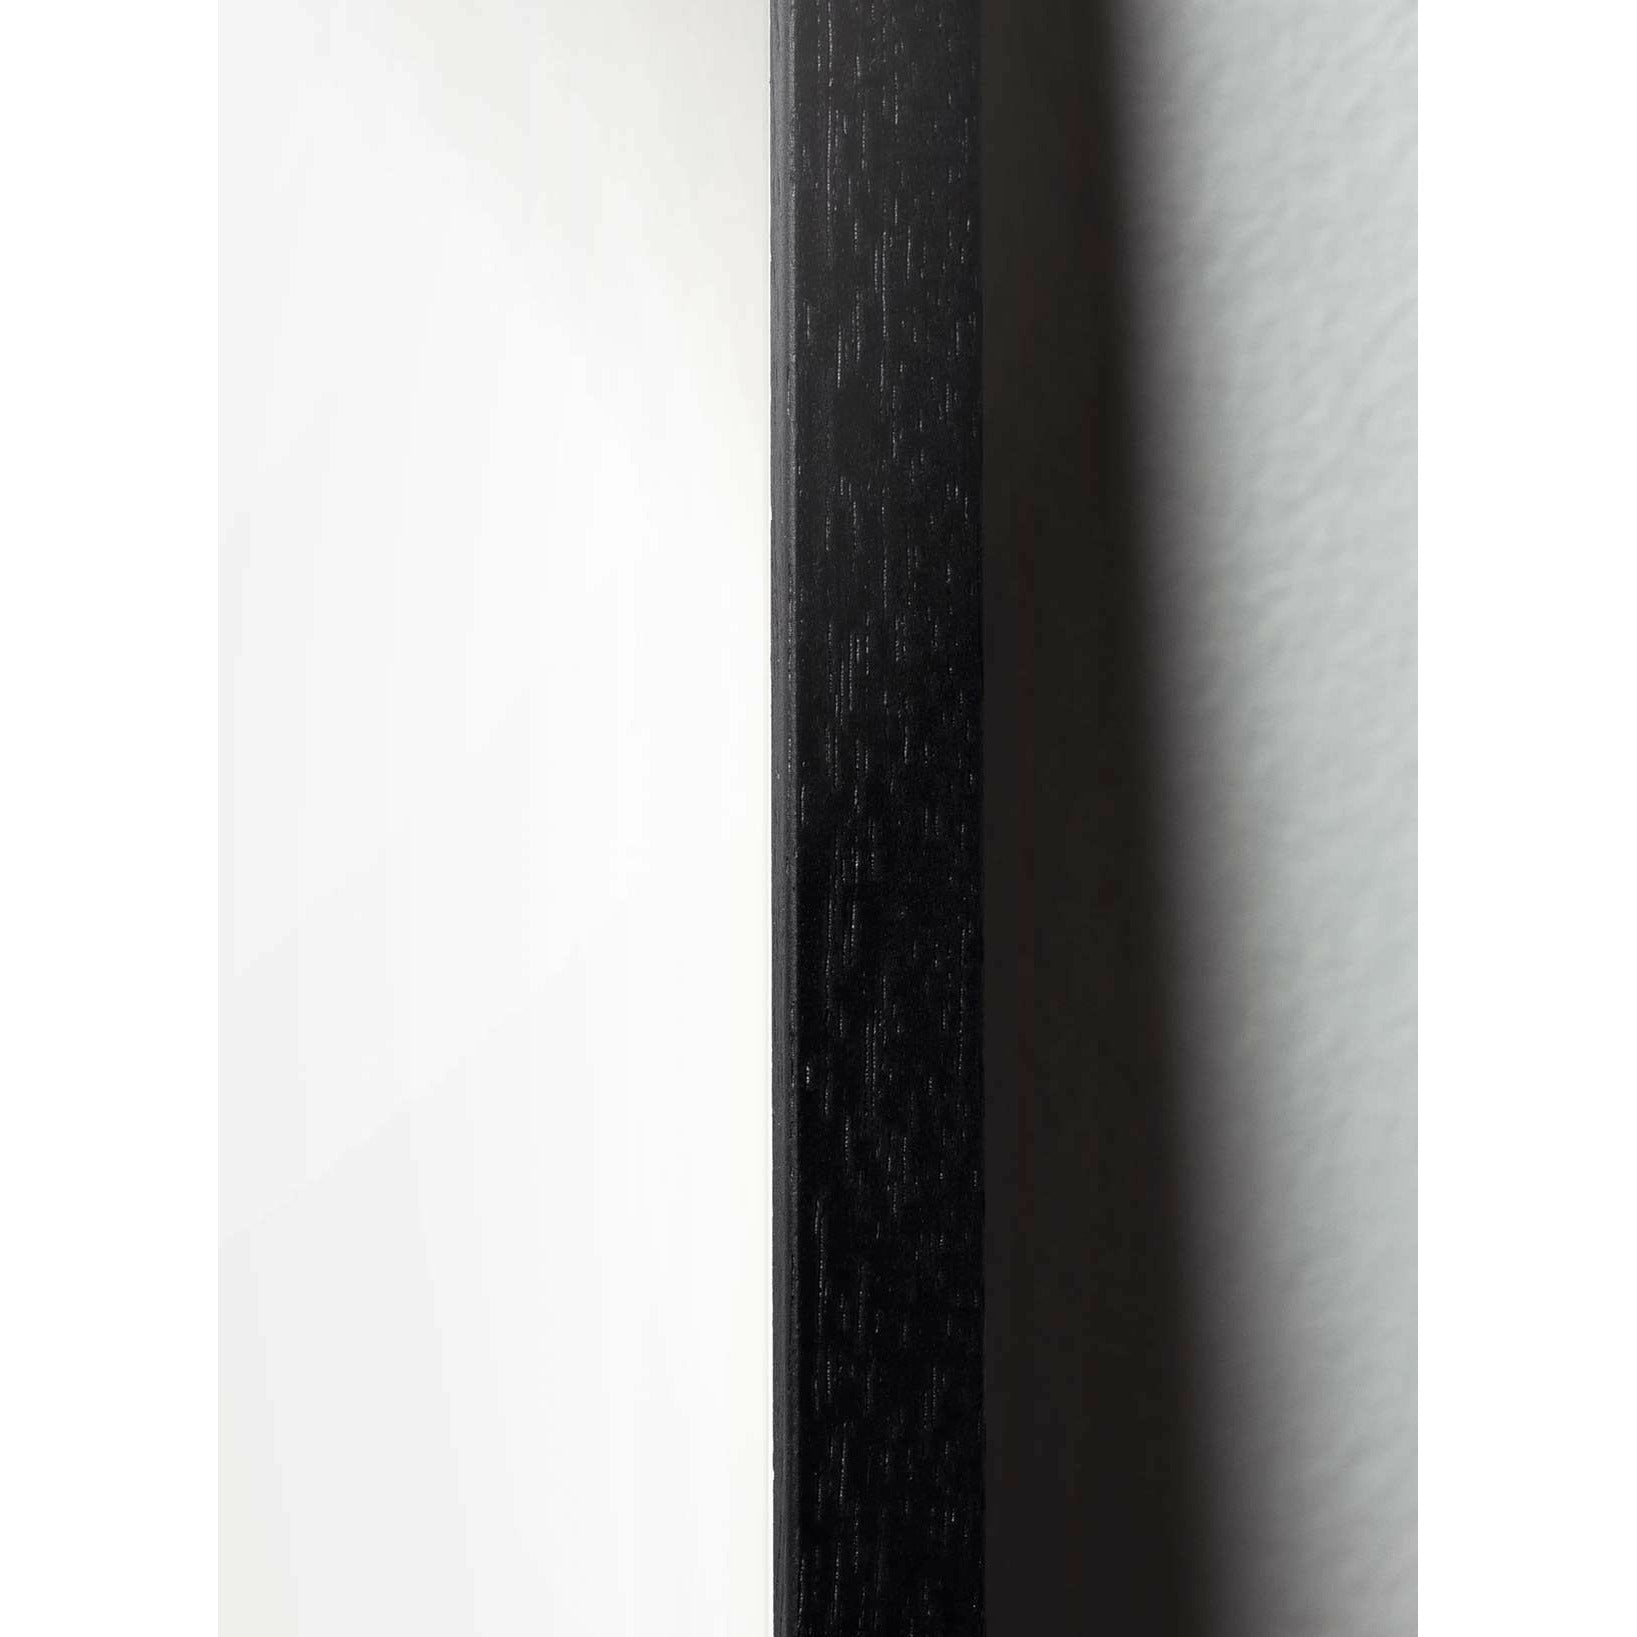 Brainchild Tallkotte Line Affisch, ram i svart lackerat trä 70x100 cm, vit bakgrund